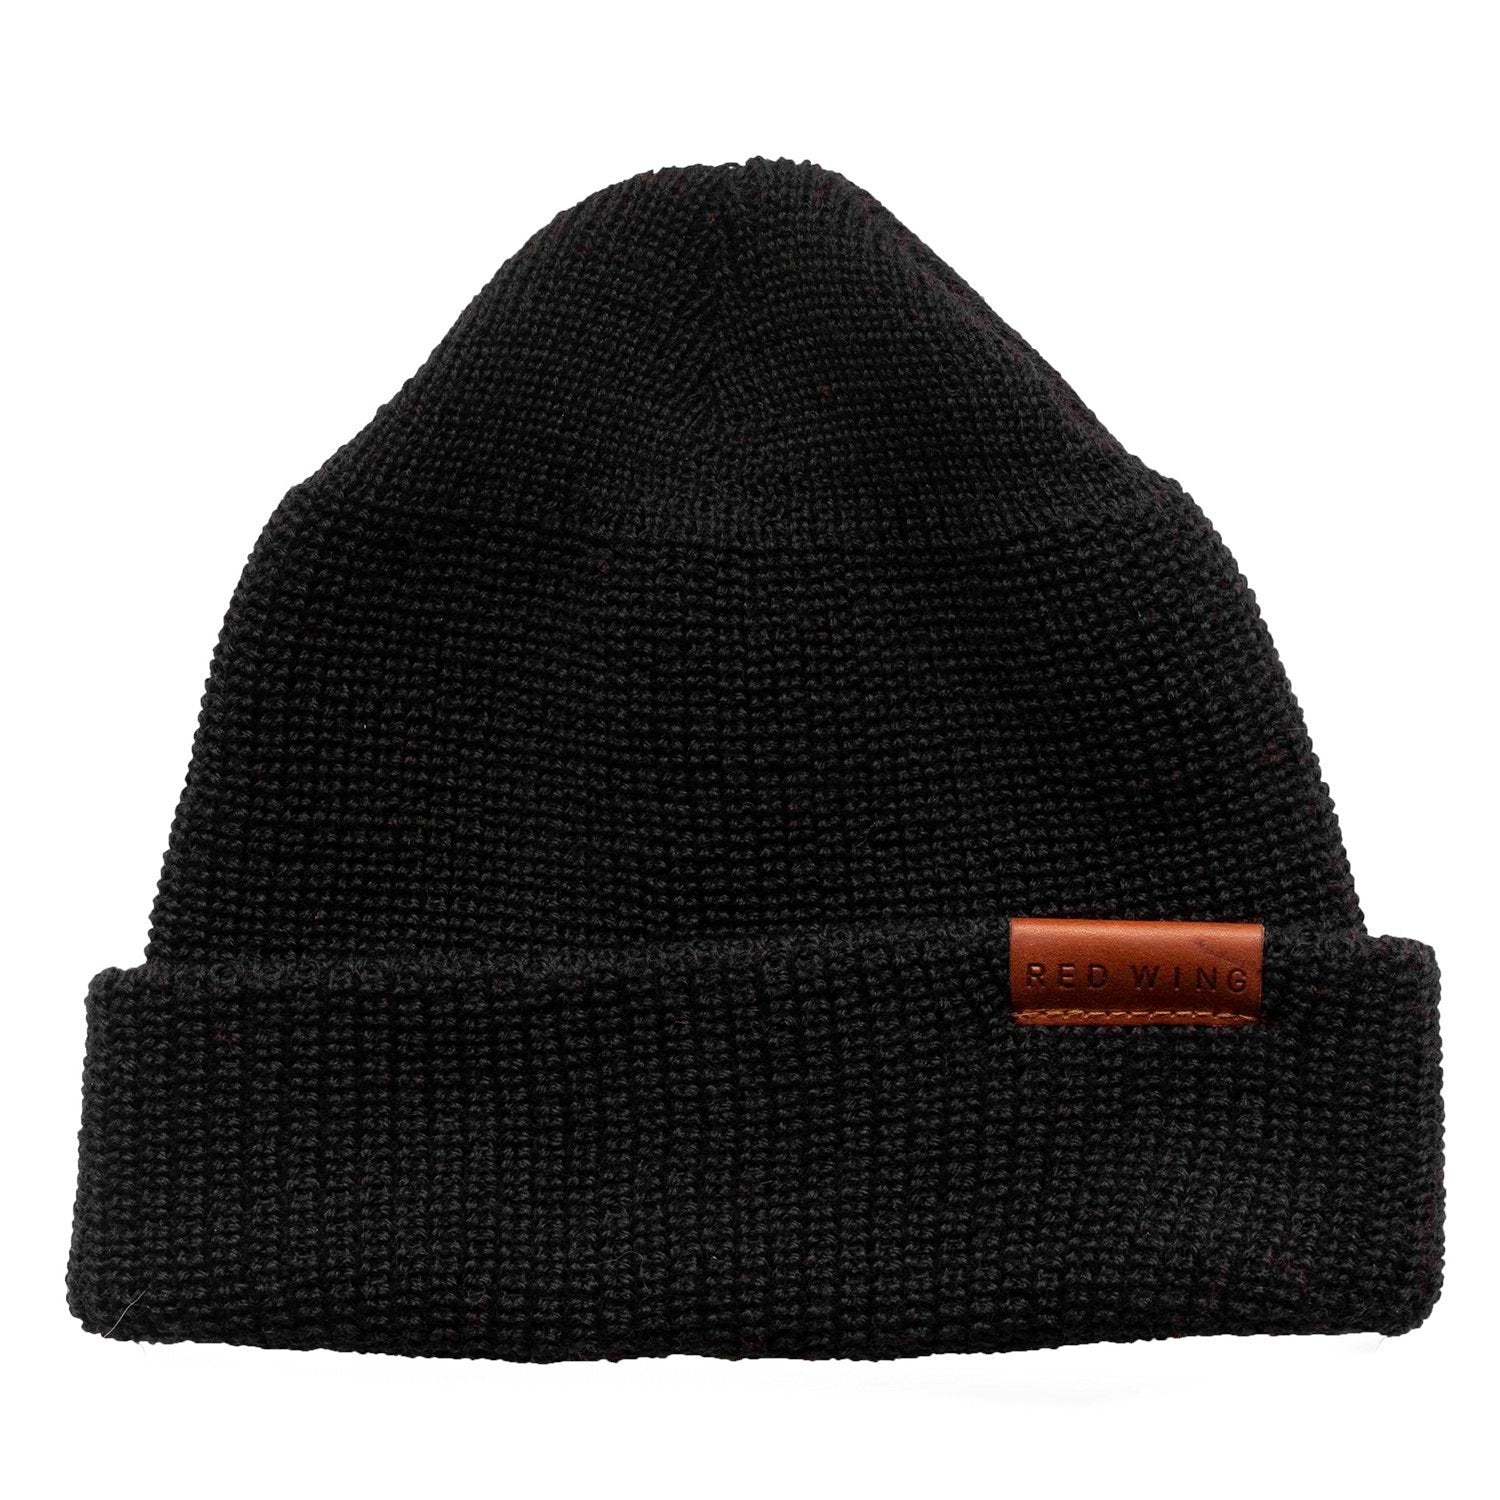 Merino Wool Knit Cap 97492 Black - grown&sewn